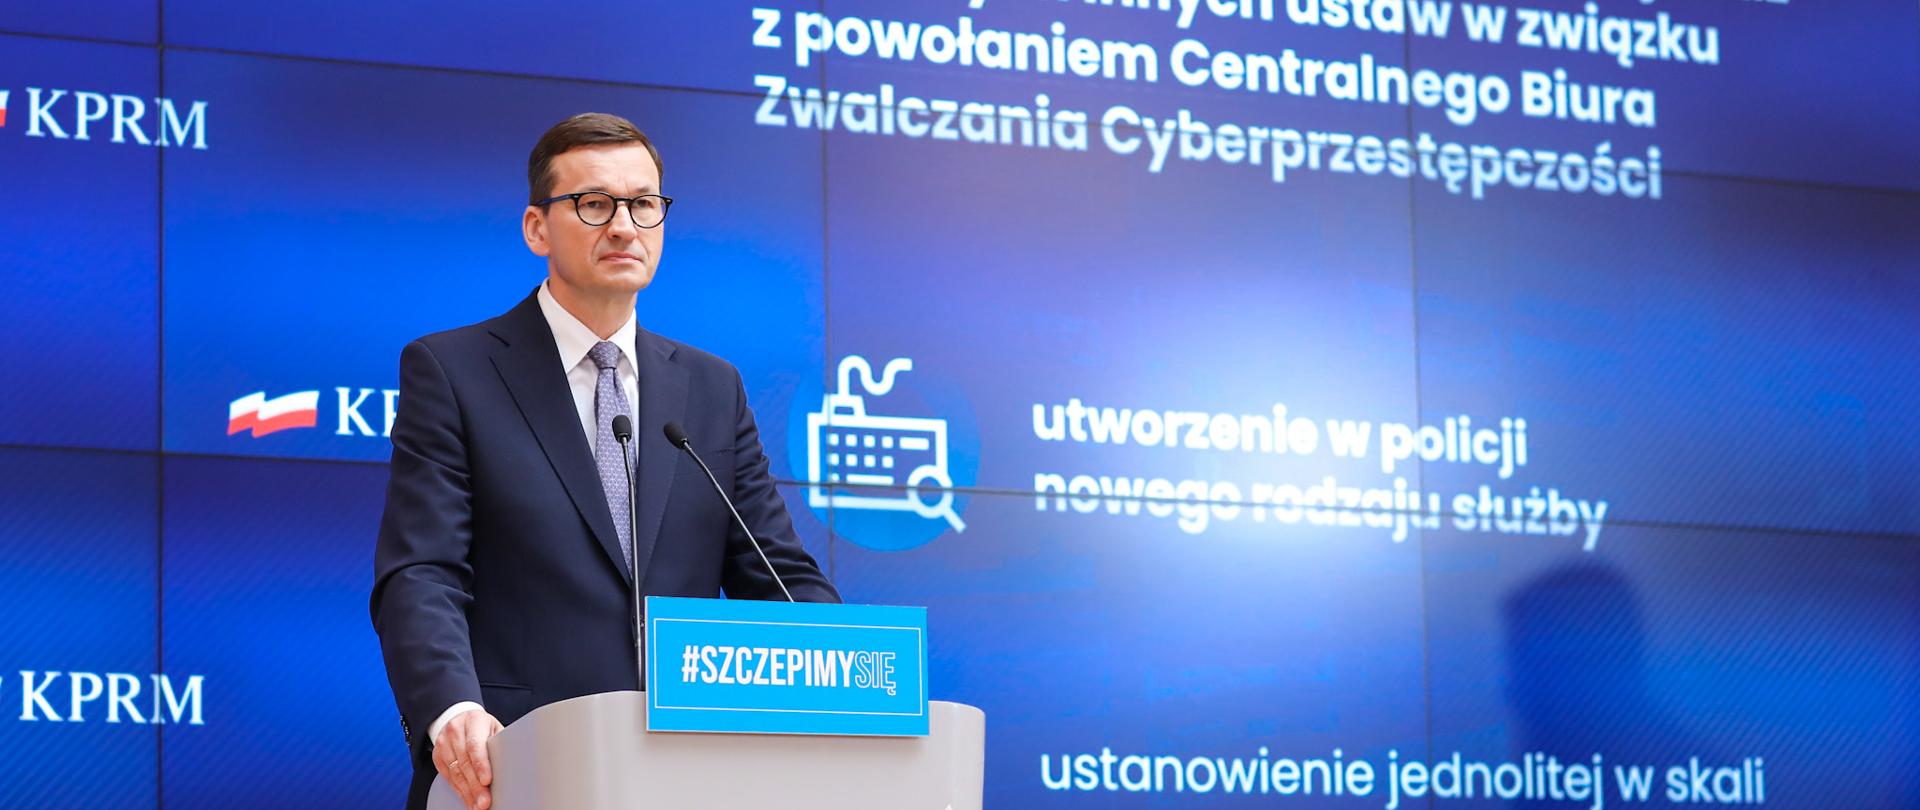 Premier Mateusz Morawiecki stoi przy mównicy podczas konferencji prasowej na temat cyberbezpieczeństwa w Polsce